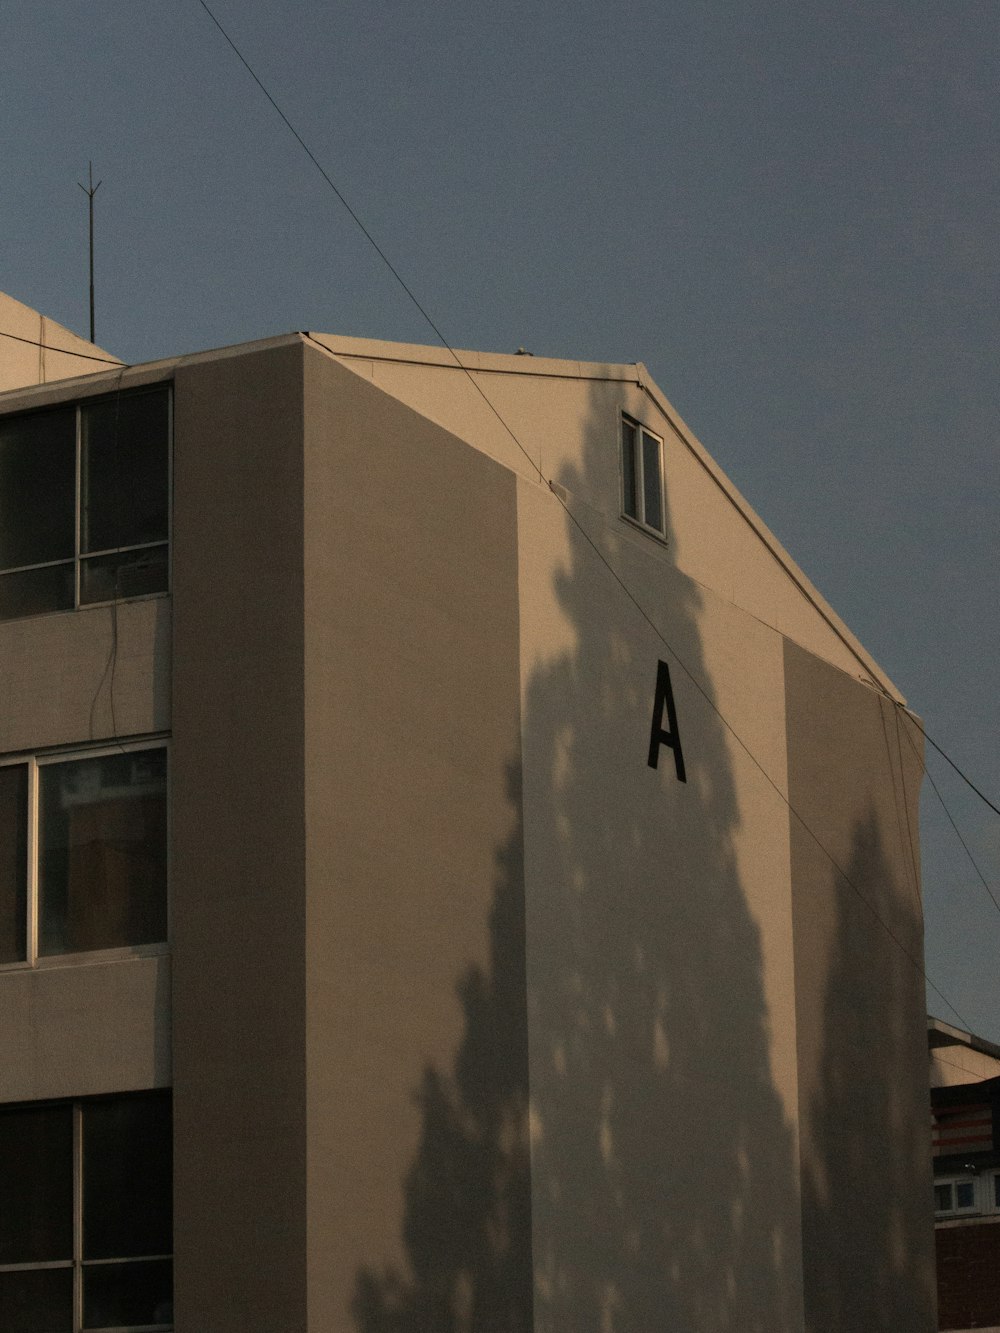 l’ombre d’une personne sur un bâtiment